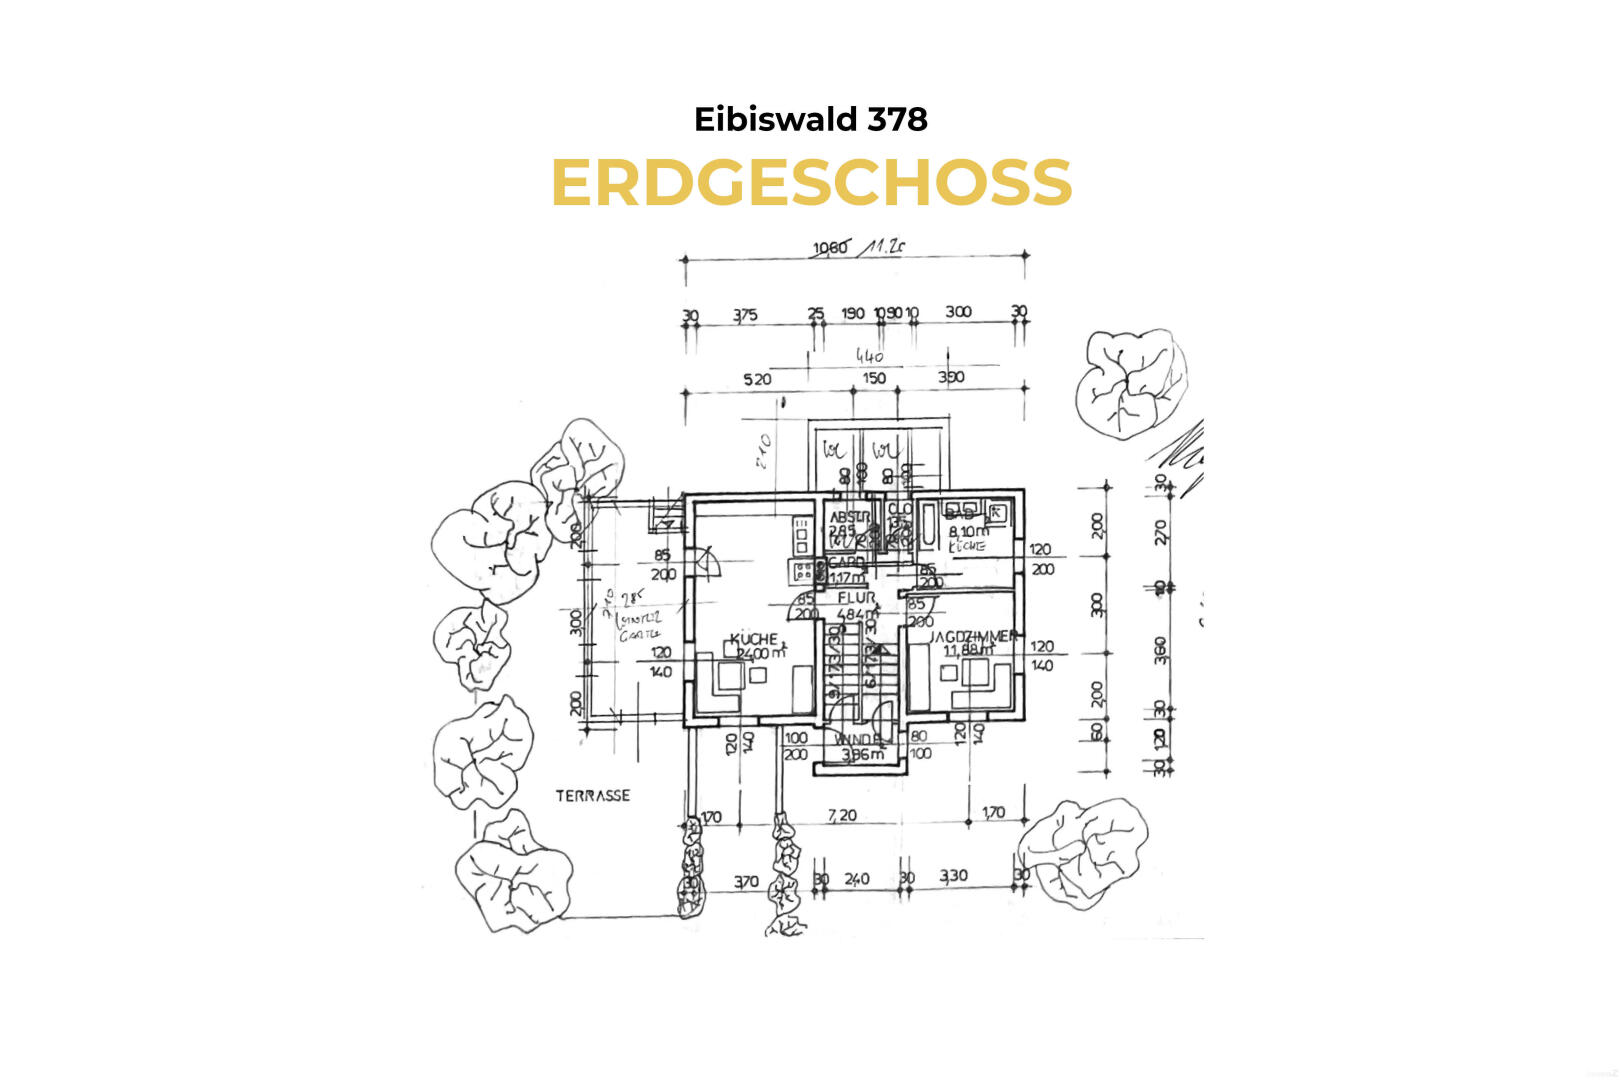 Haus zu kaufen: Eibiswald, 8552 Eibiswald - 1 Eibiswald 378 - Grundriss EG